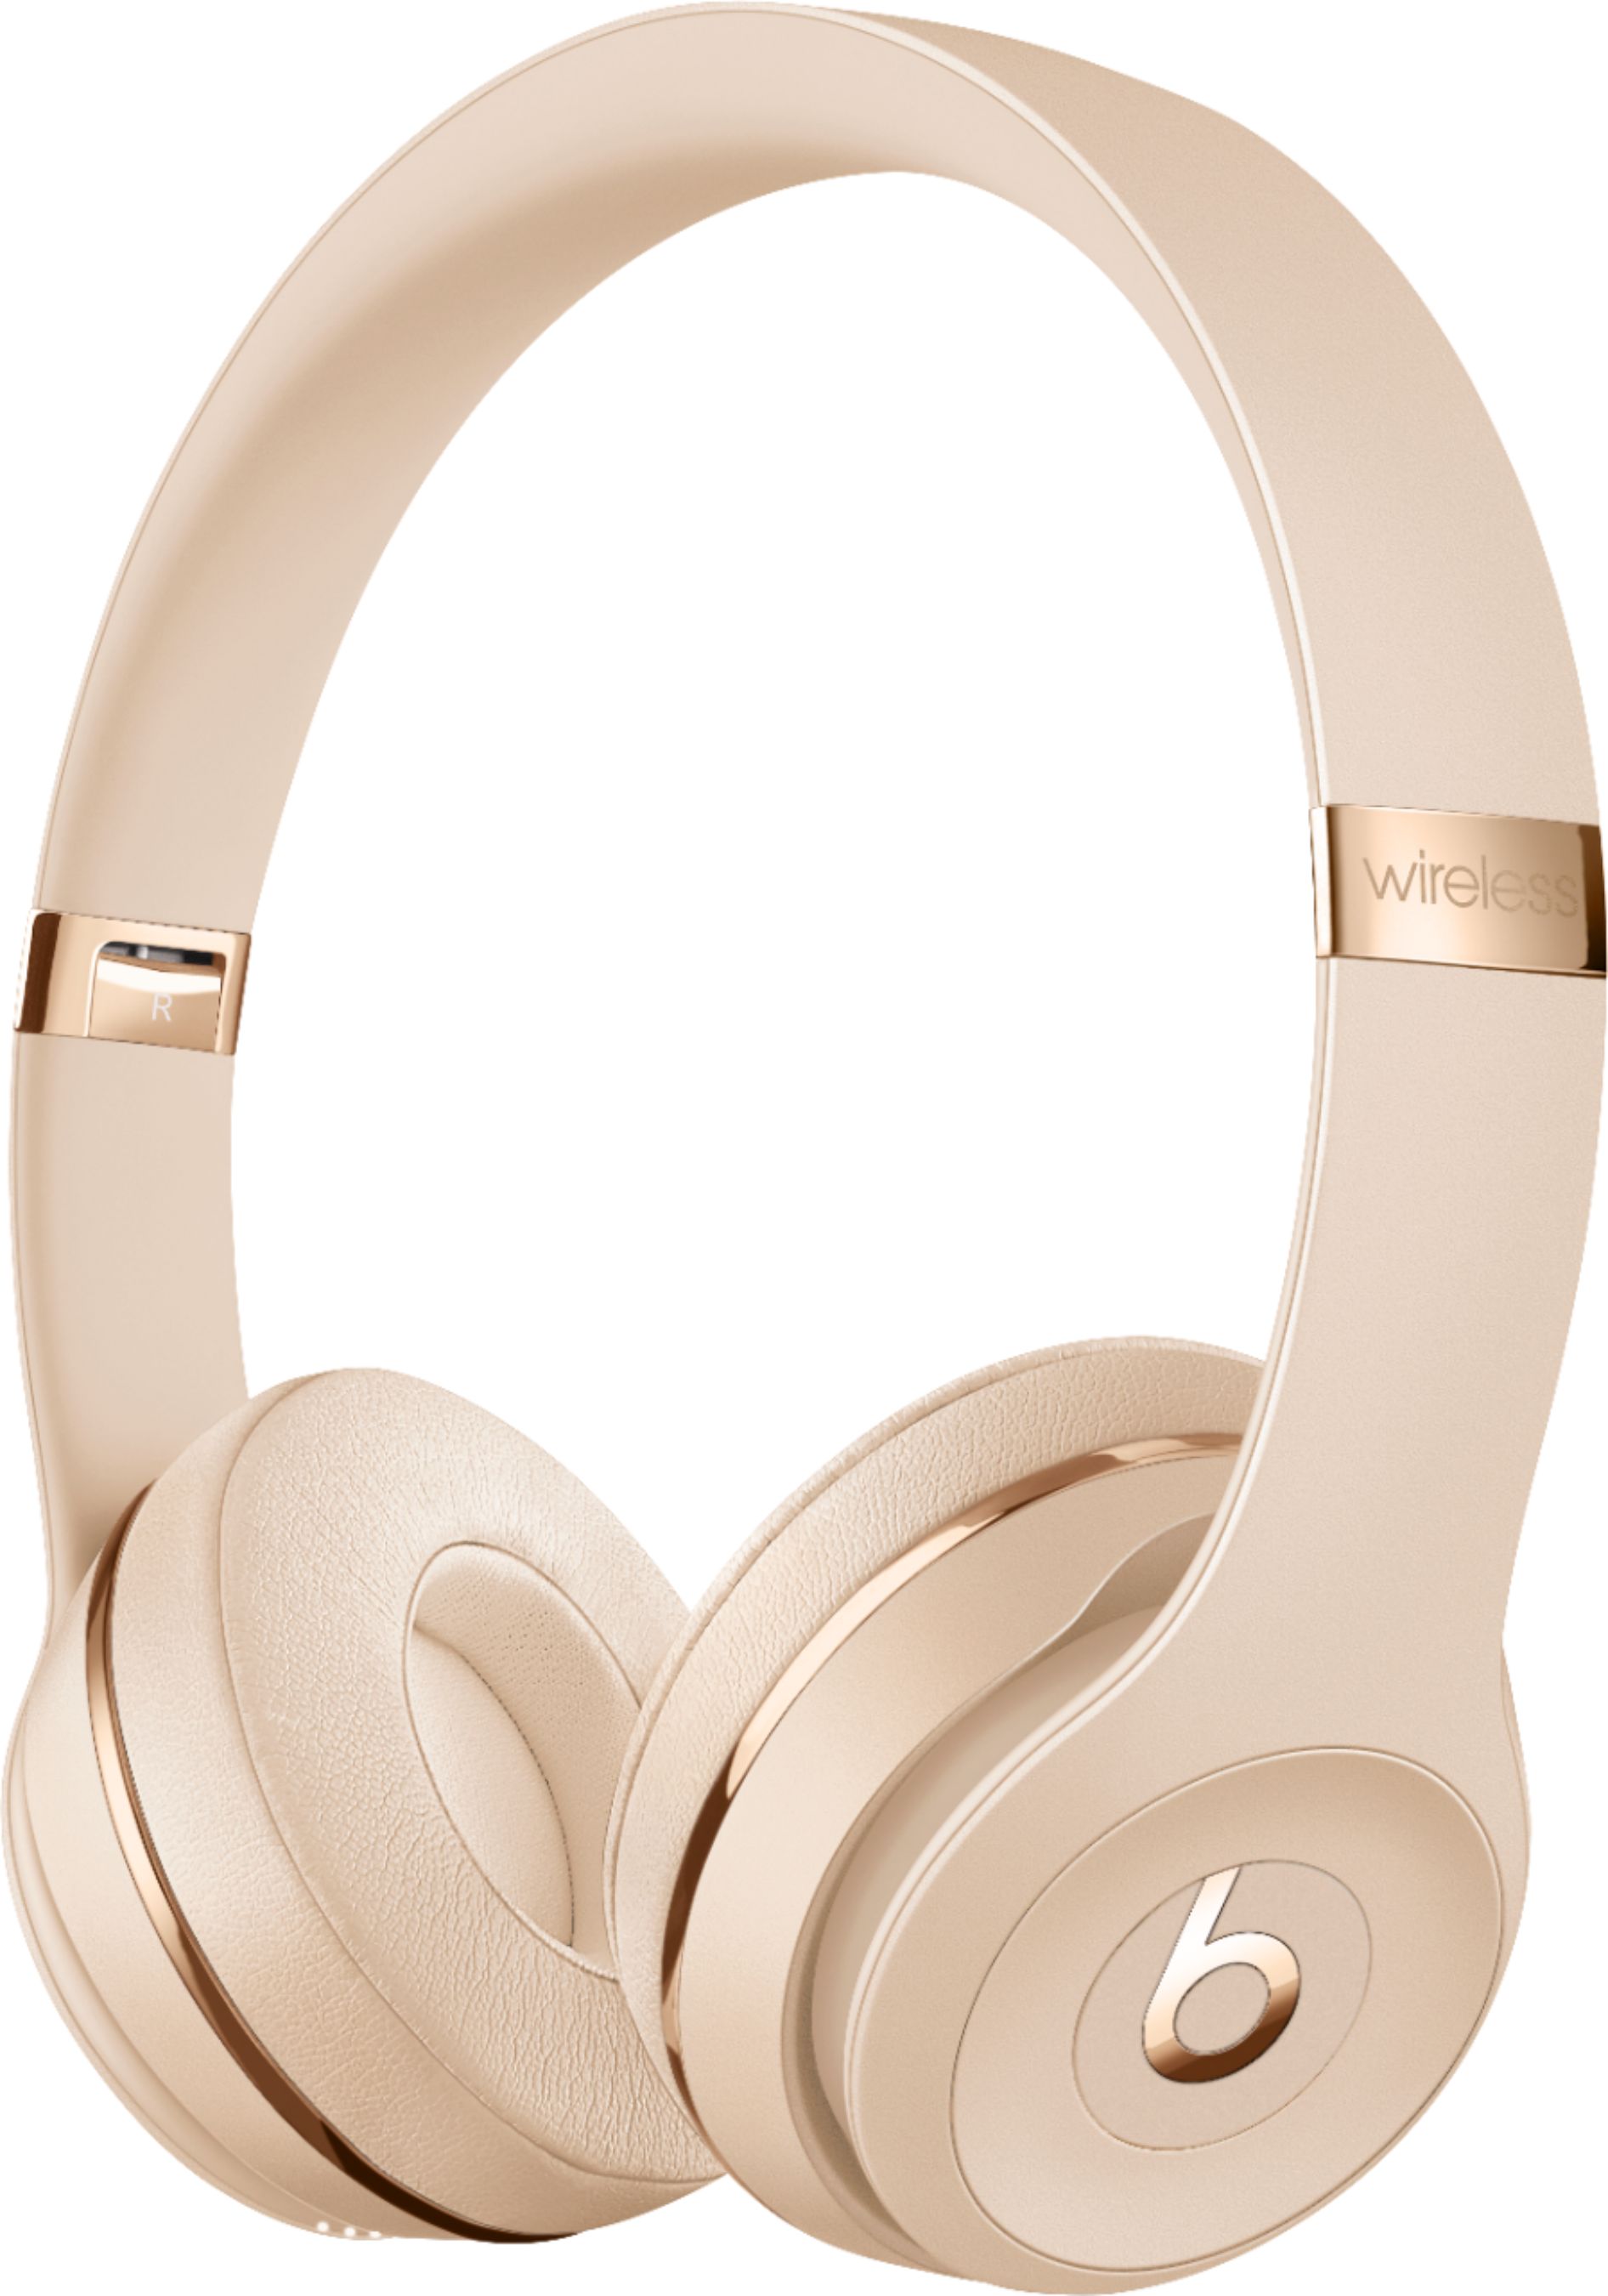 オーディオ機器 ヘッドフォン Best Buy: Beats by Dr. Dre Beats Solo3 Wireless Headphones Satin 